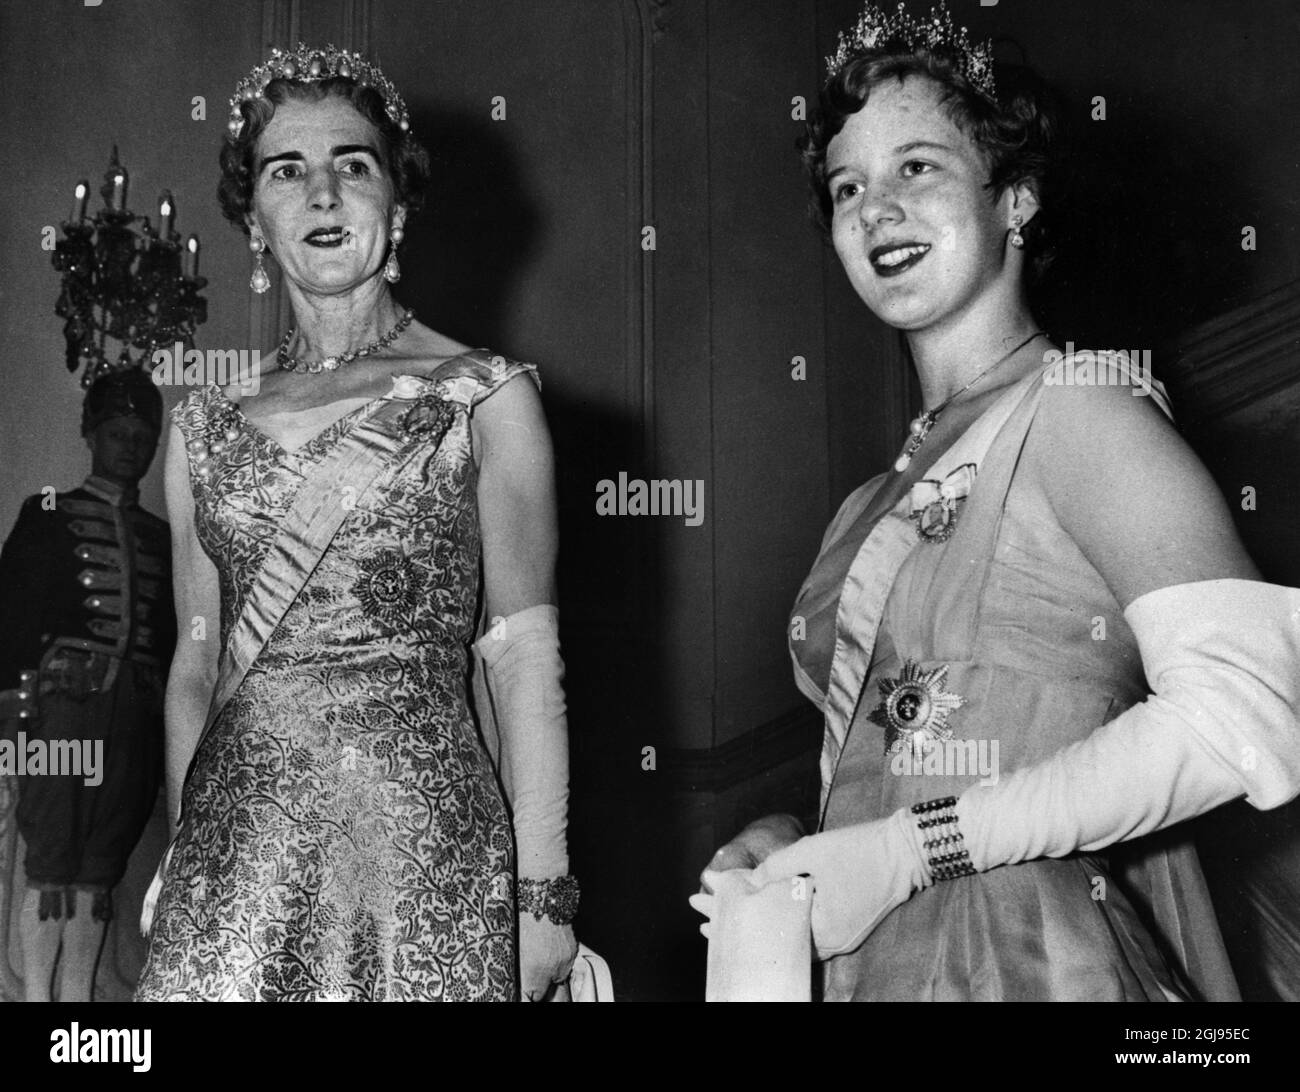 Dossier 1960 Reine Ingrid du Danemark avec sa fille Crown Princess Margrethe (aujourd'hui Reine Margrethe II) Foto: Svenskt Pressfoto / TT / Kod: 20360 Banque D'Images